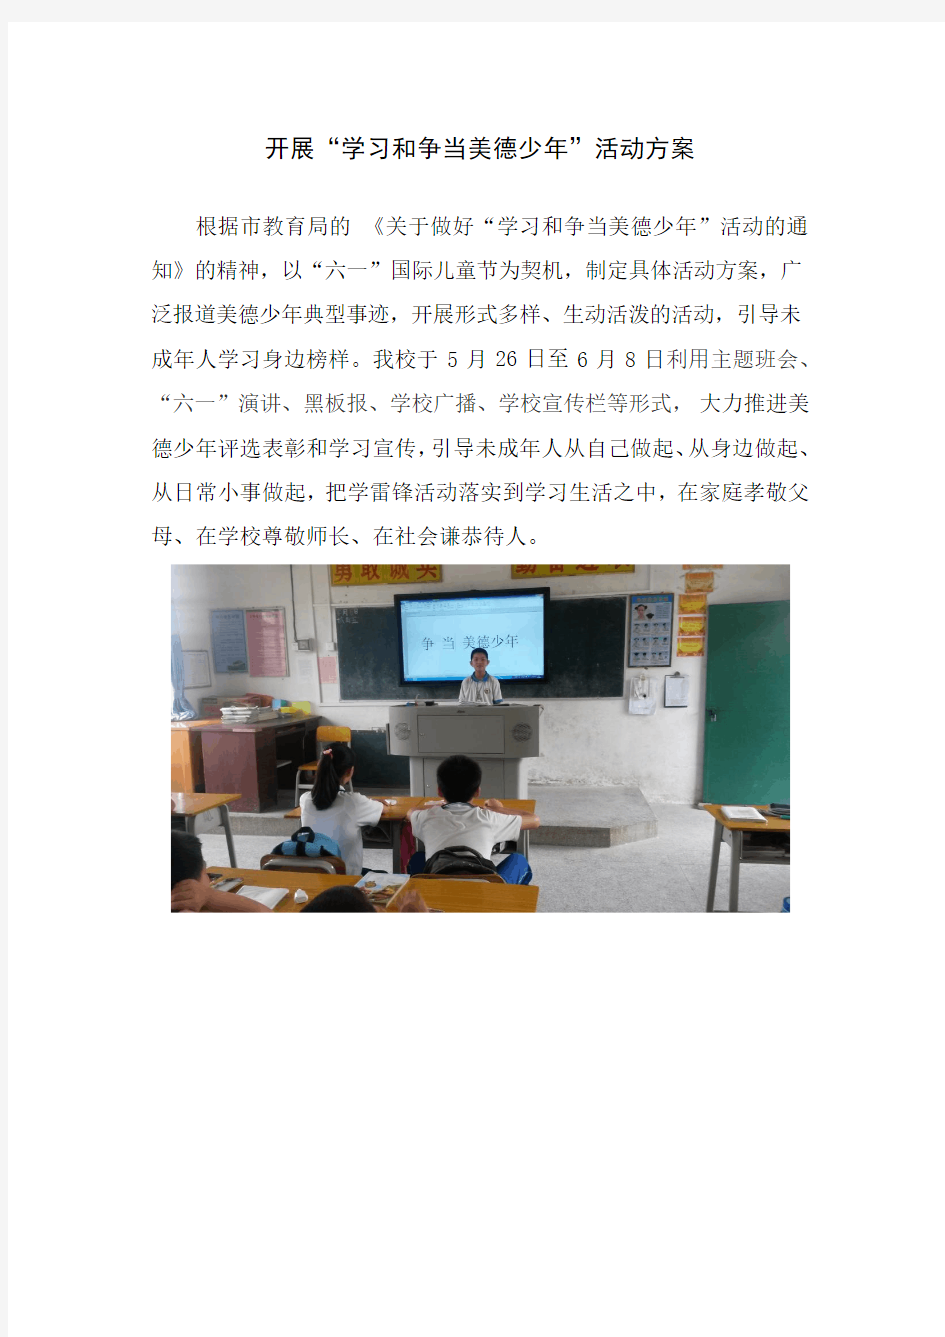 郑田小学开展“学习争当美德少年”活动方案、总结